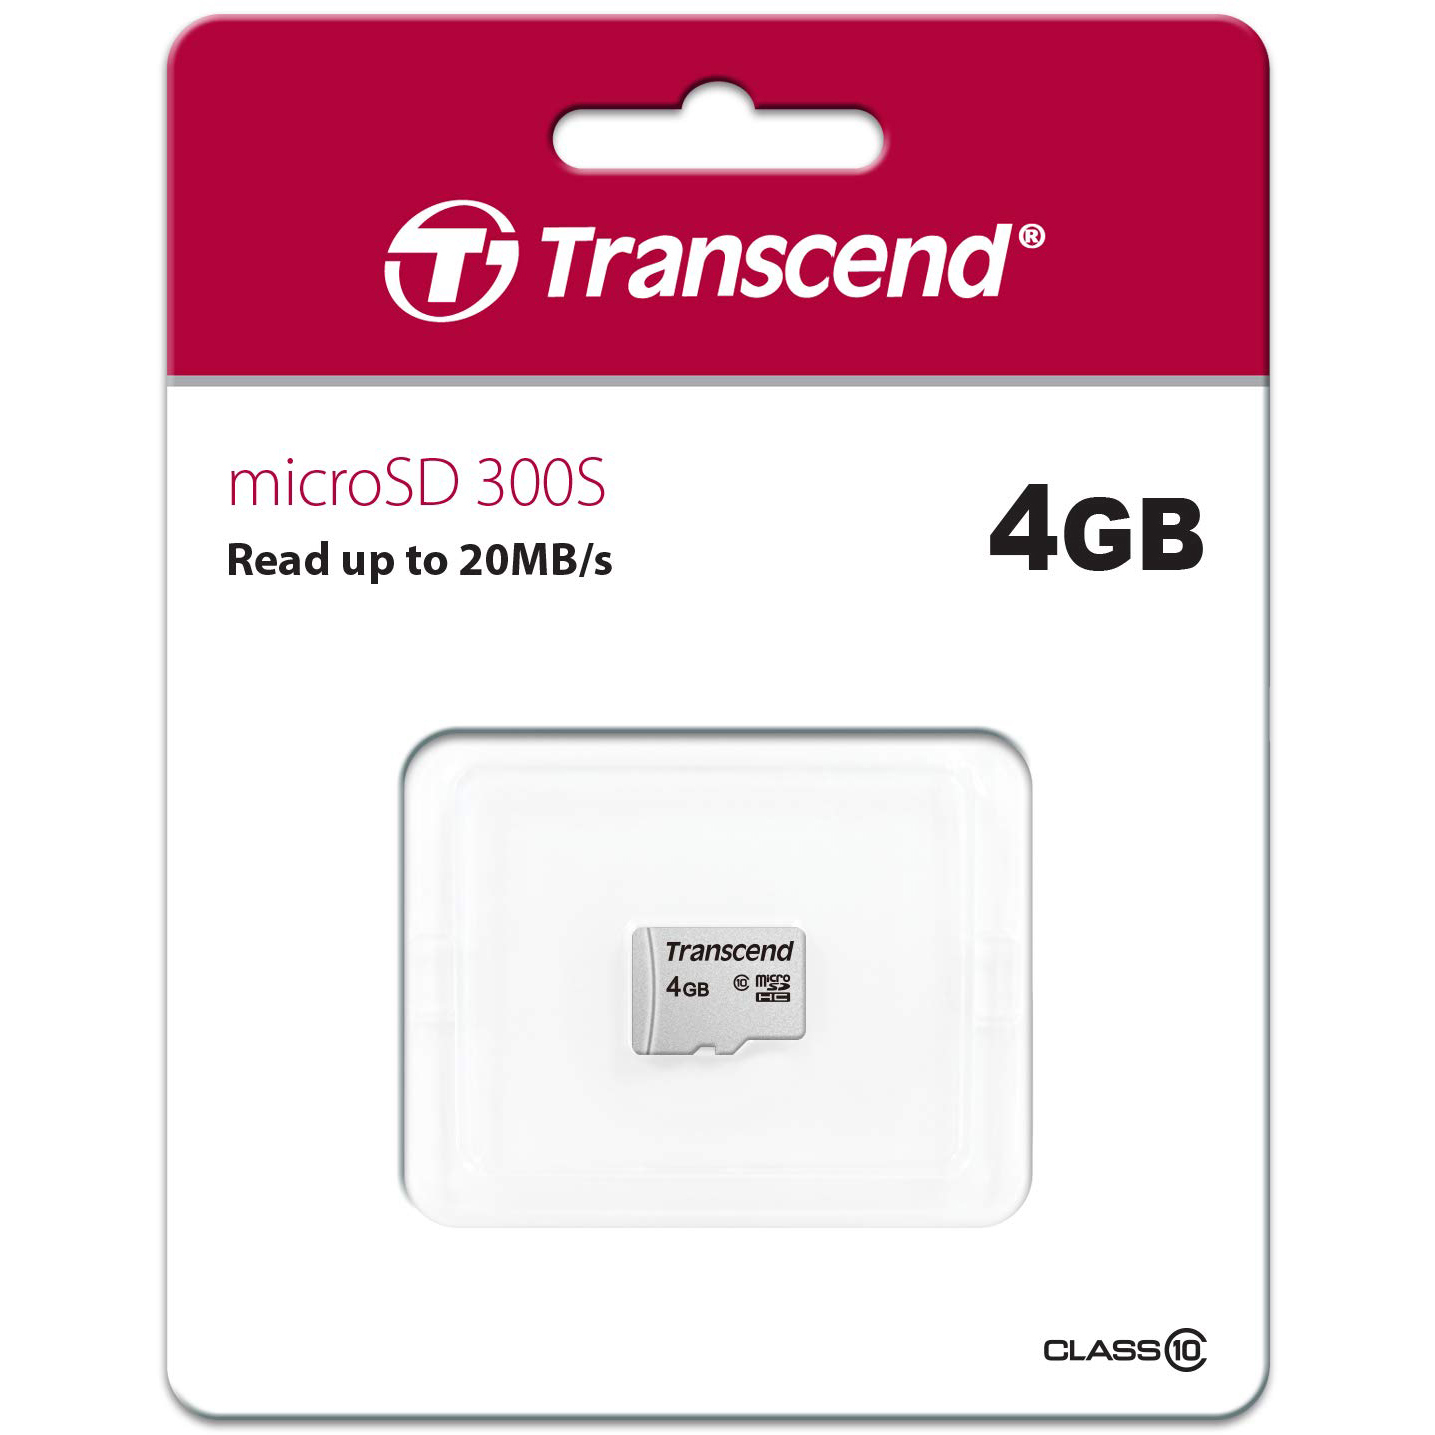 Original Transcend 300S Class 10 4GB microSDHC Memory Card (TS4GUSD300S)